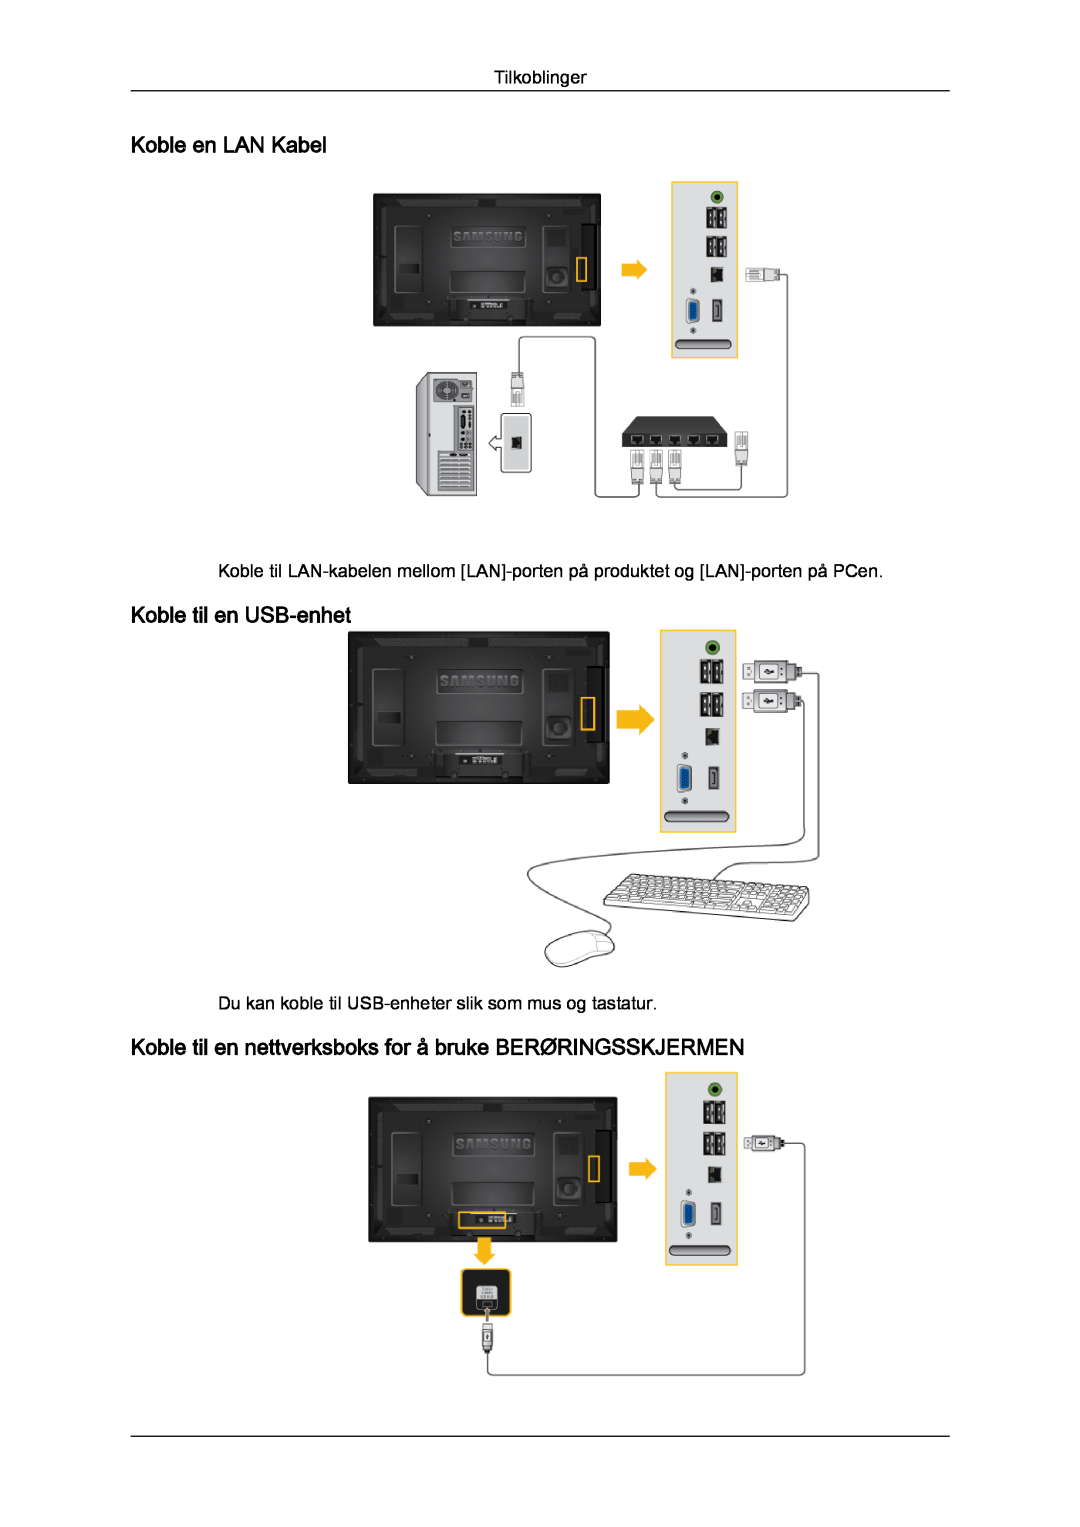 Samsung LH40CRPMBD/EN Koble en LAN Kabel, Koble til en USB-enhet, Koble til en nettverksboks for å bruke BERØRINGSSKJERMEN 